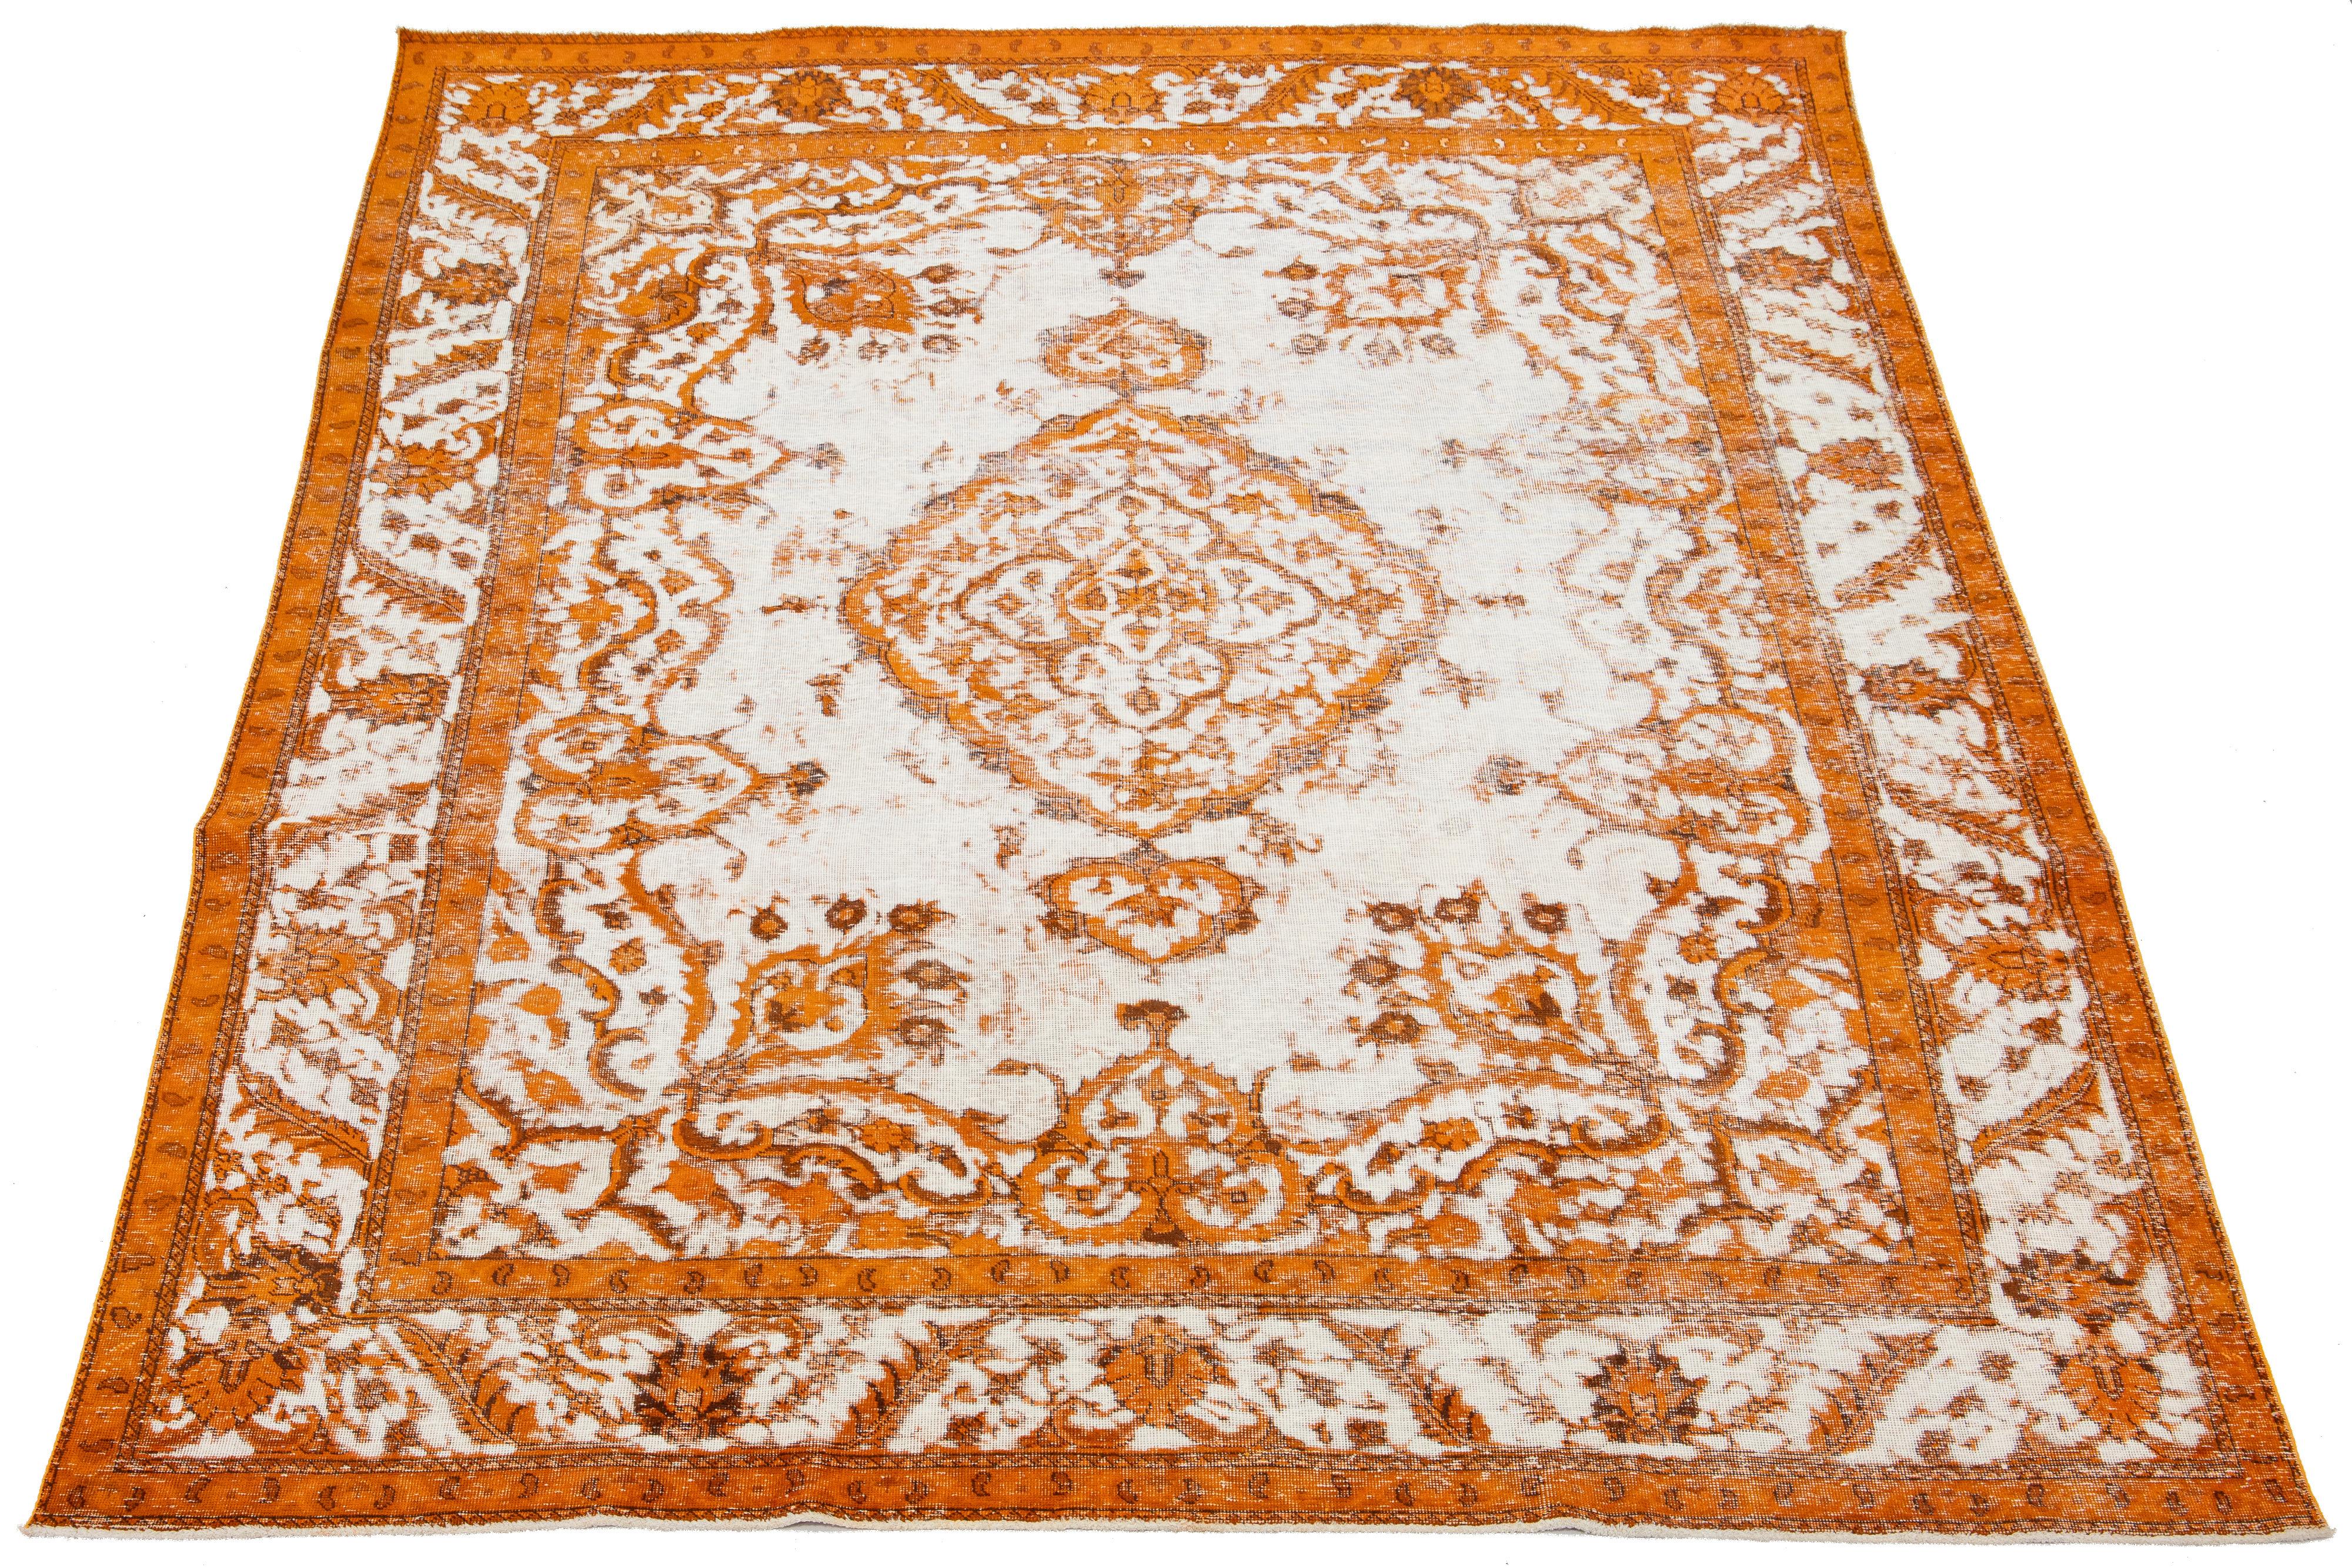 Il s'agit d'un tapis en laine persane de couleur ivoire, avec un motif floral en médaillon et des accents orange. Il est noué à la main et a un aspect antique.

Ce tapis mesure 9'3'' x 12'2